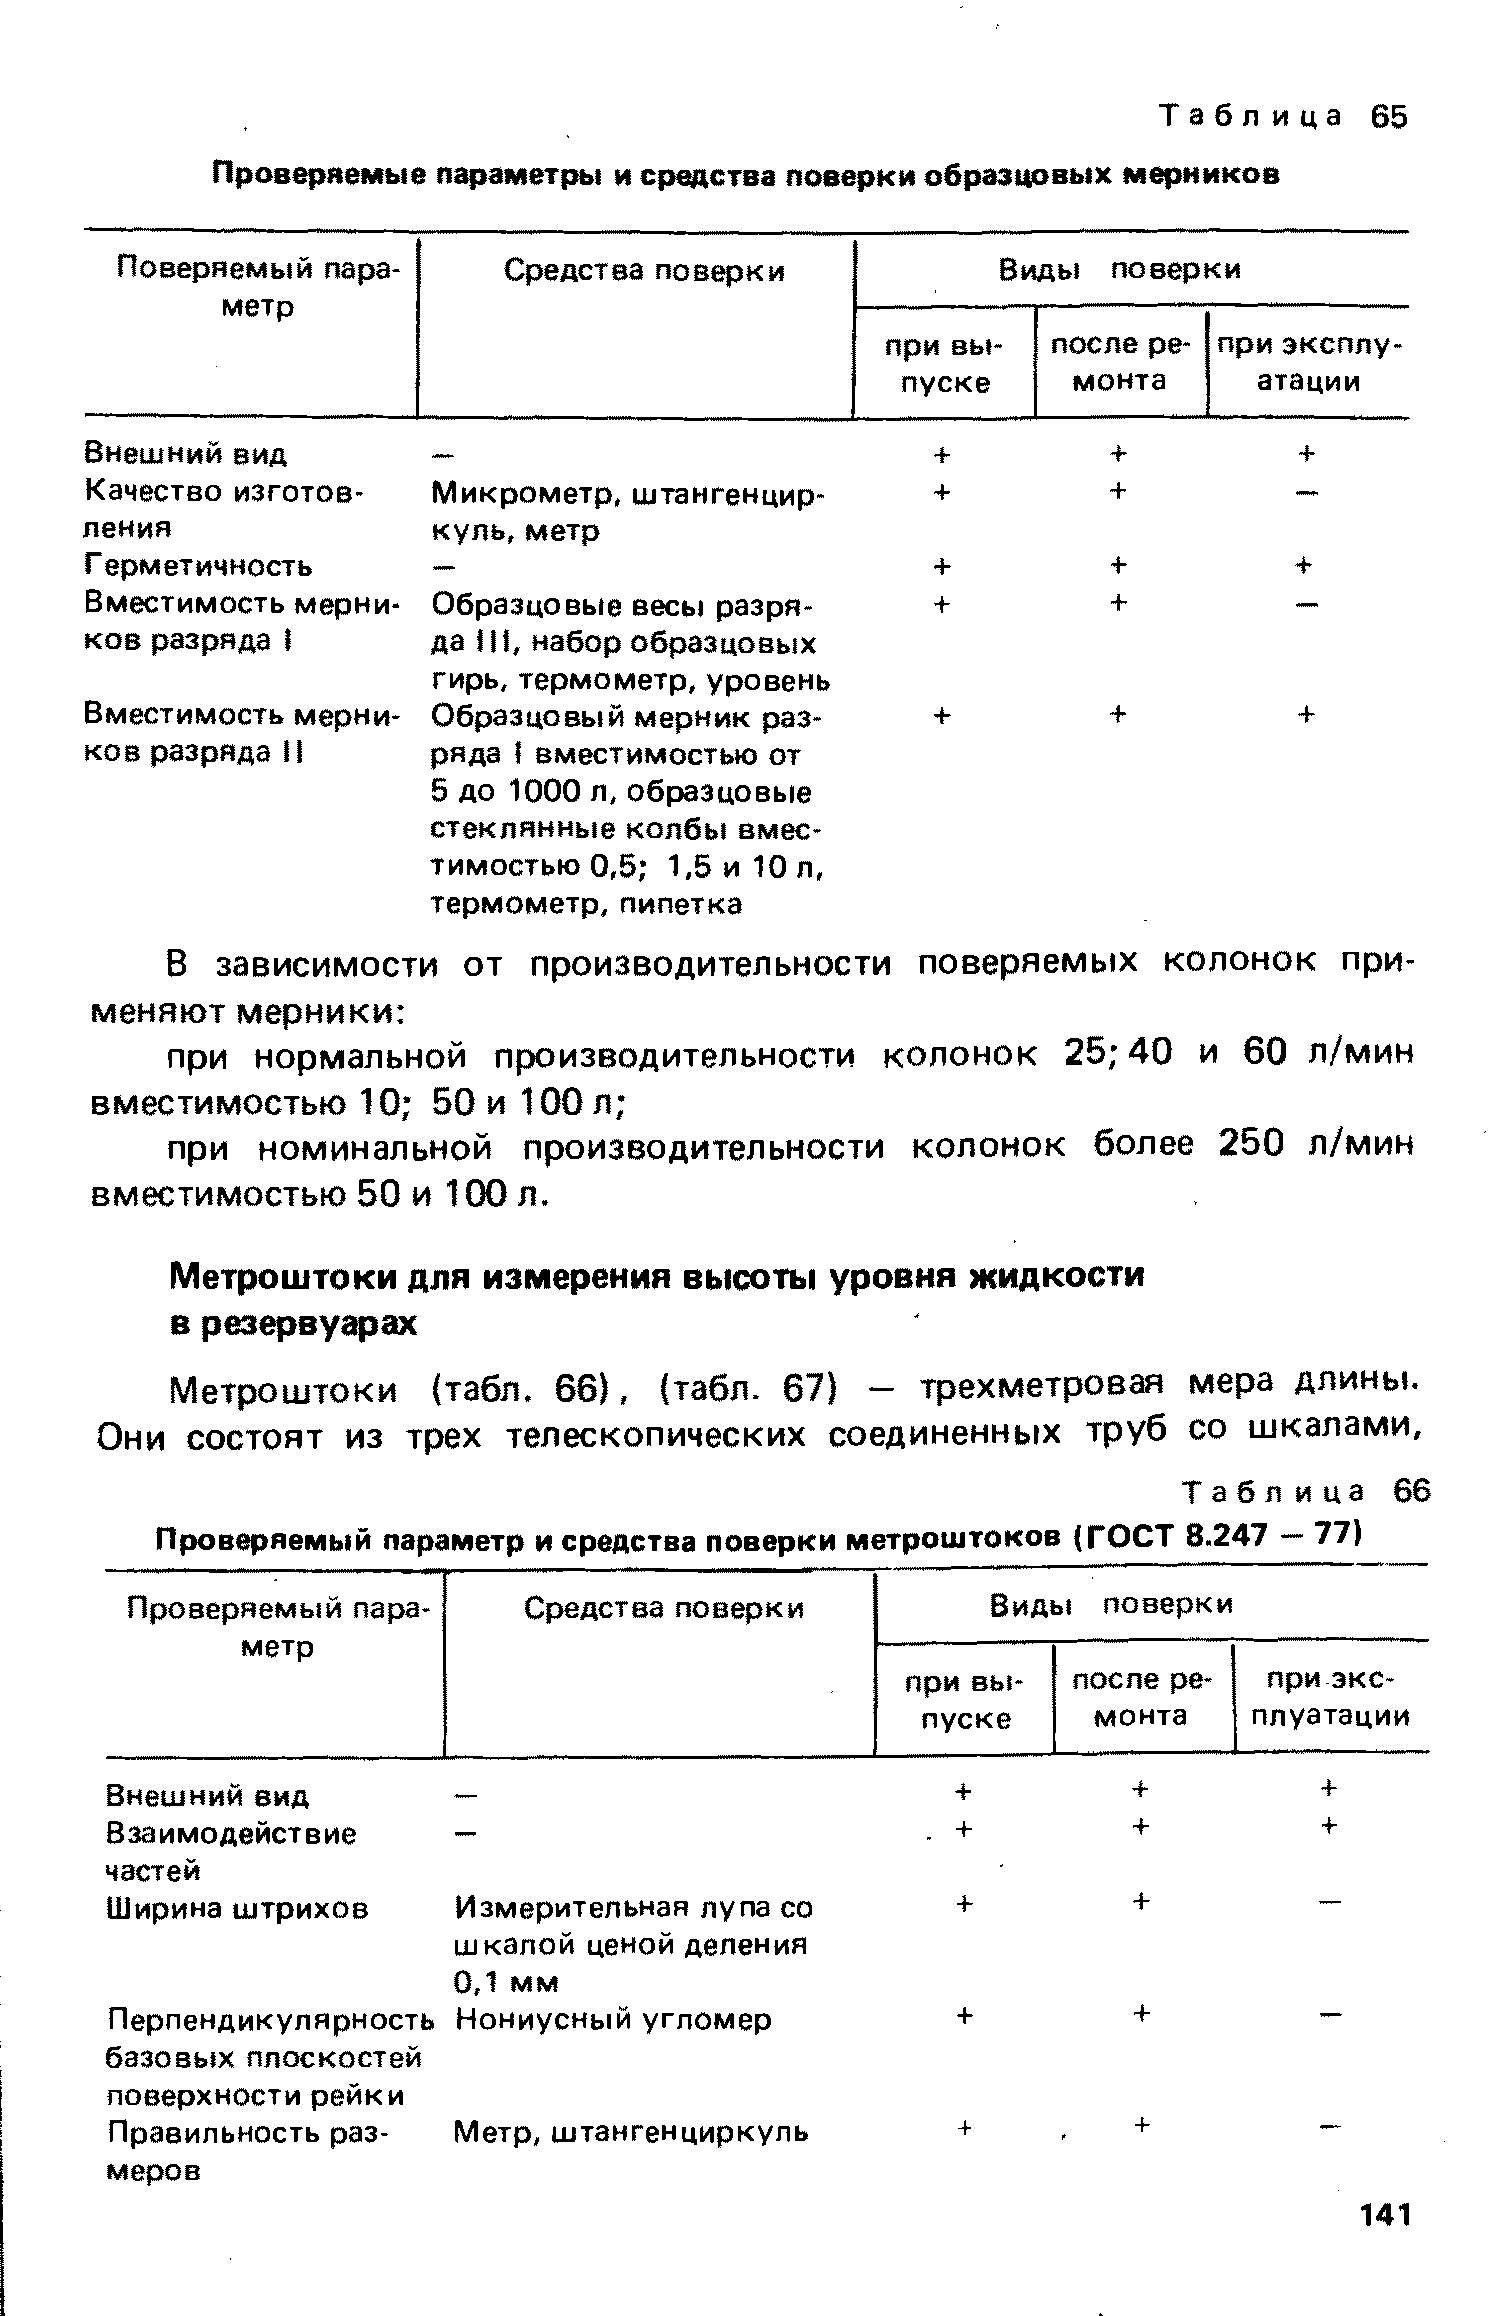 Таблица 66 Проверяемый параметр и средства поверки метроштоков (ГОСТ 8.247 - 77)
